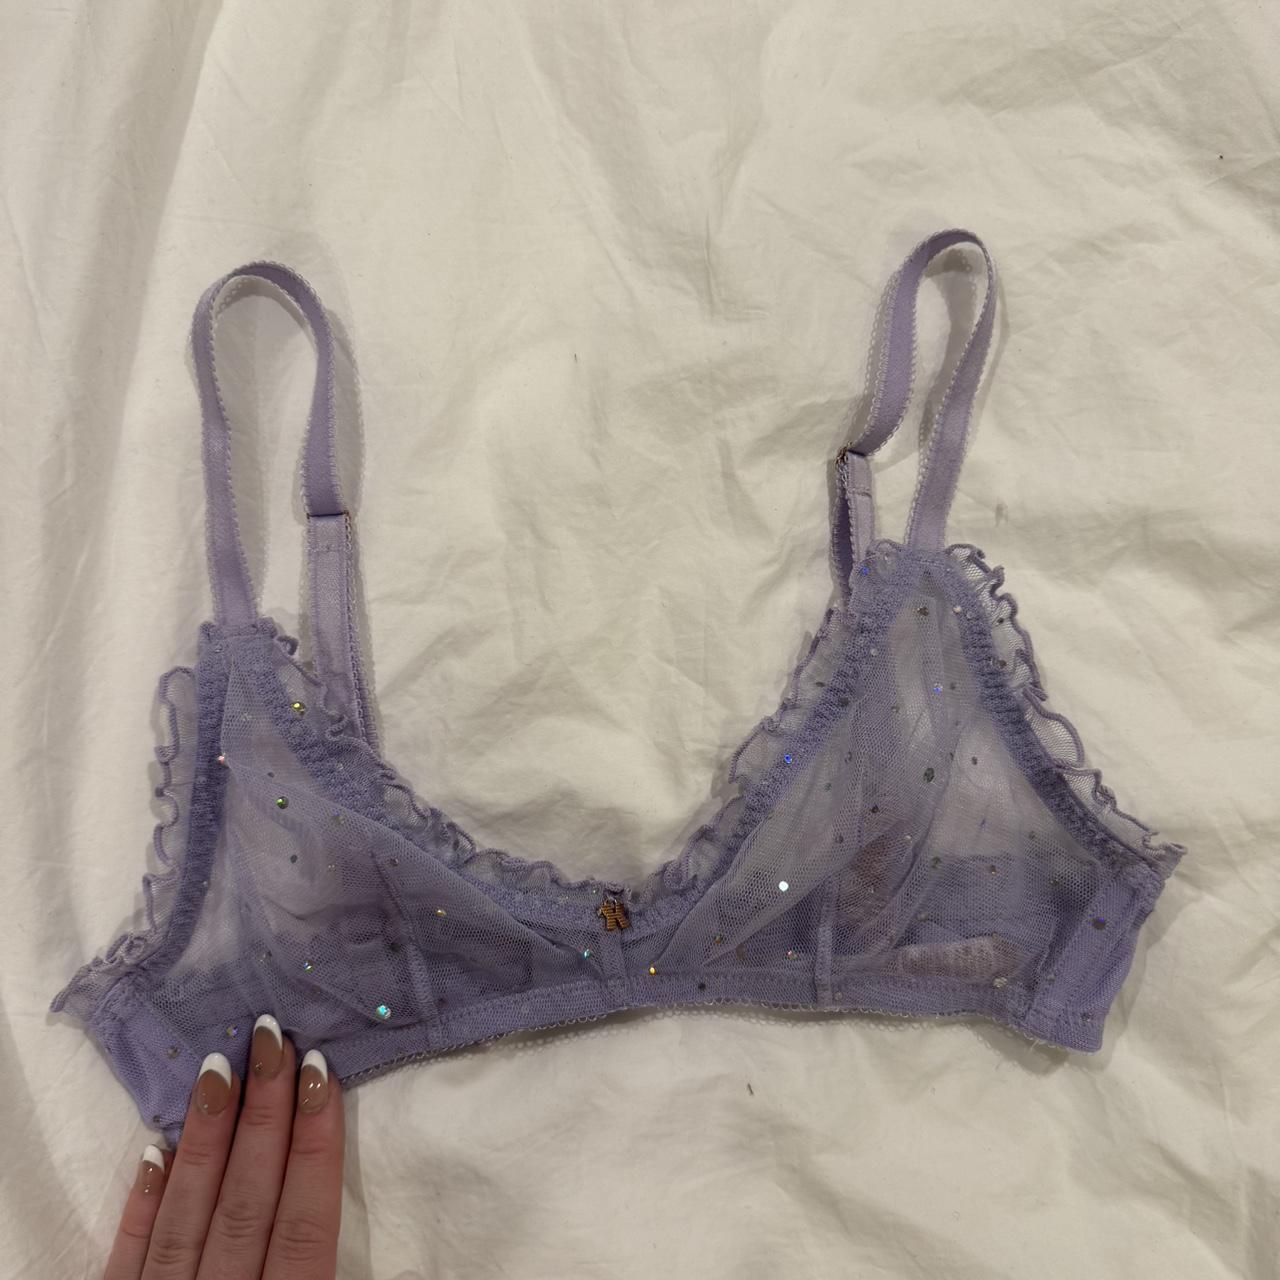 Bras n Things Balconette Lace lingerie bra 🖤 •bras - Depop